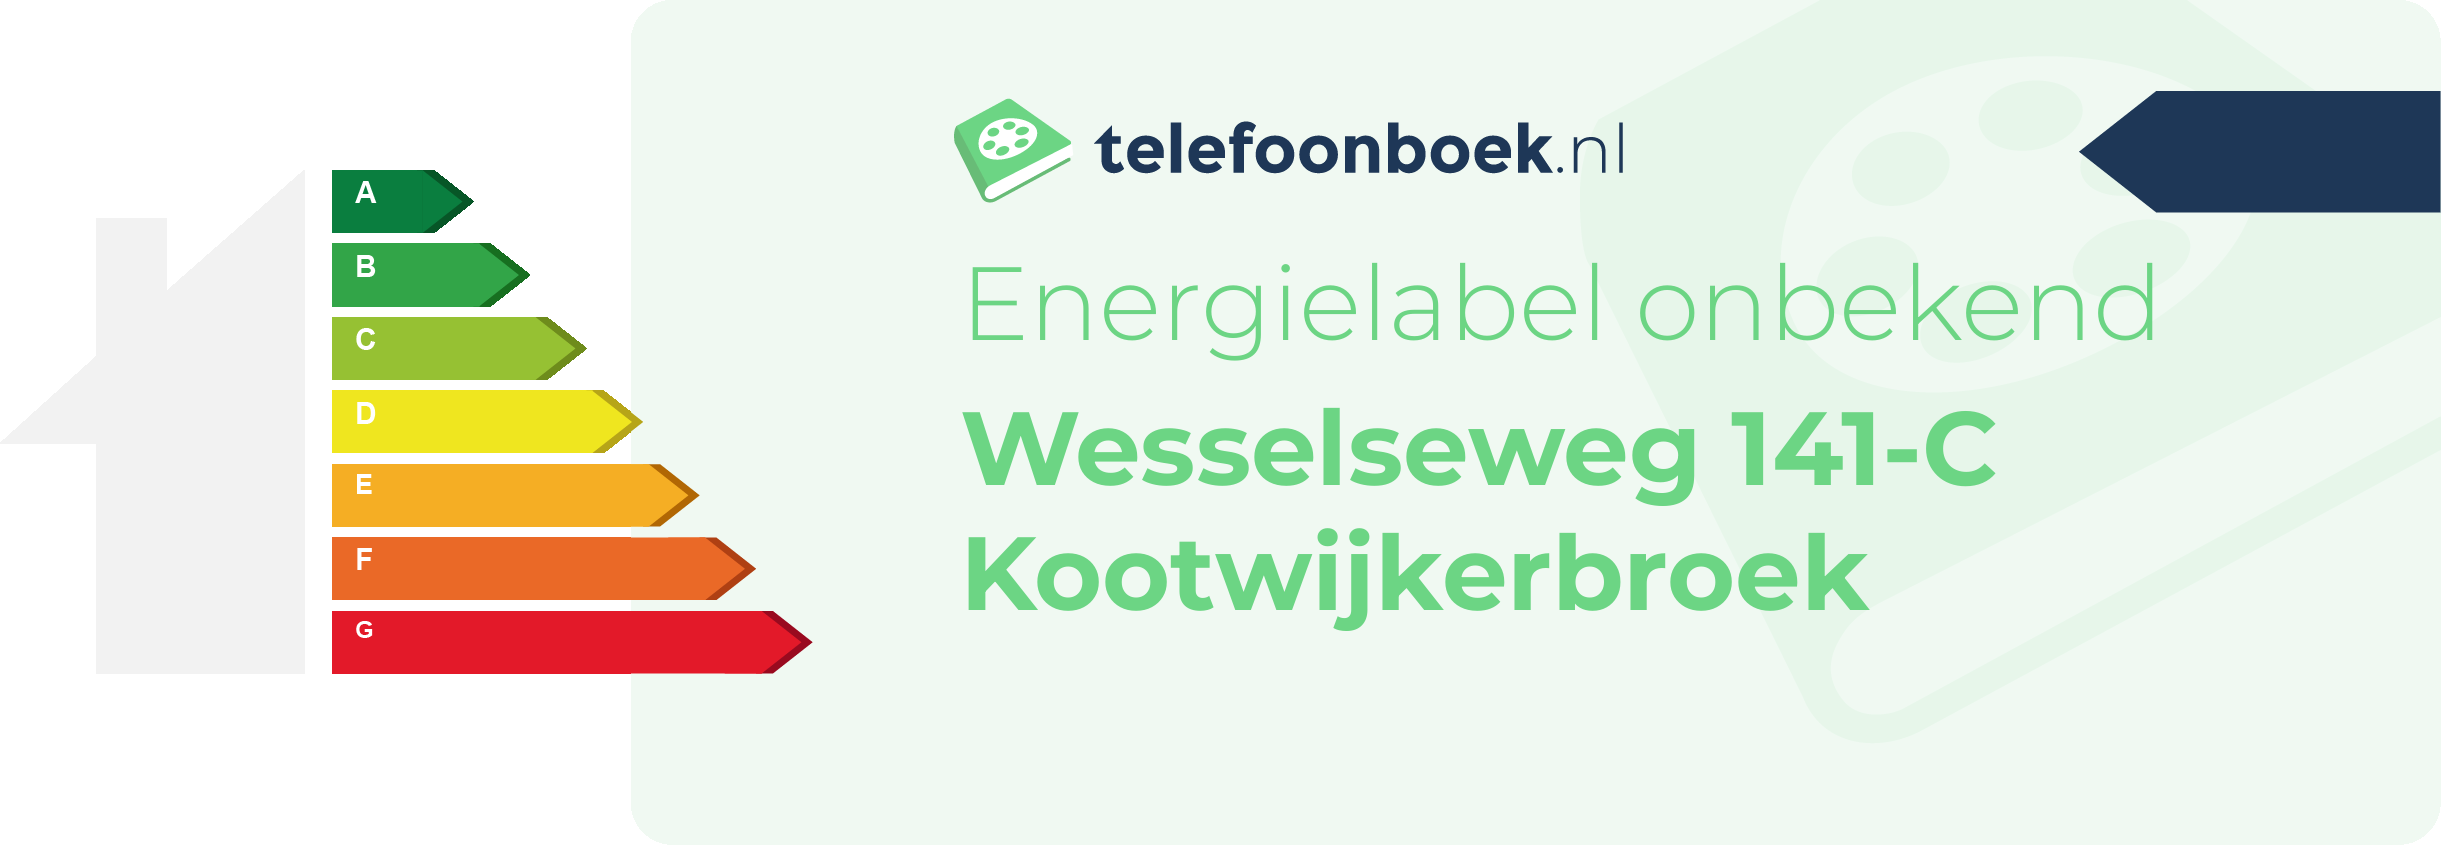 Energielabel Wesselseweg 141-C Kootwijkerbroek